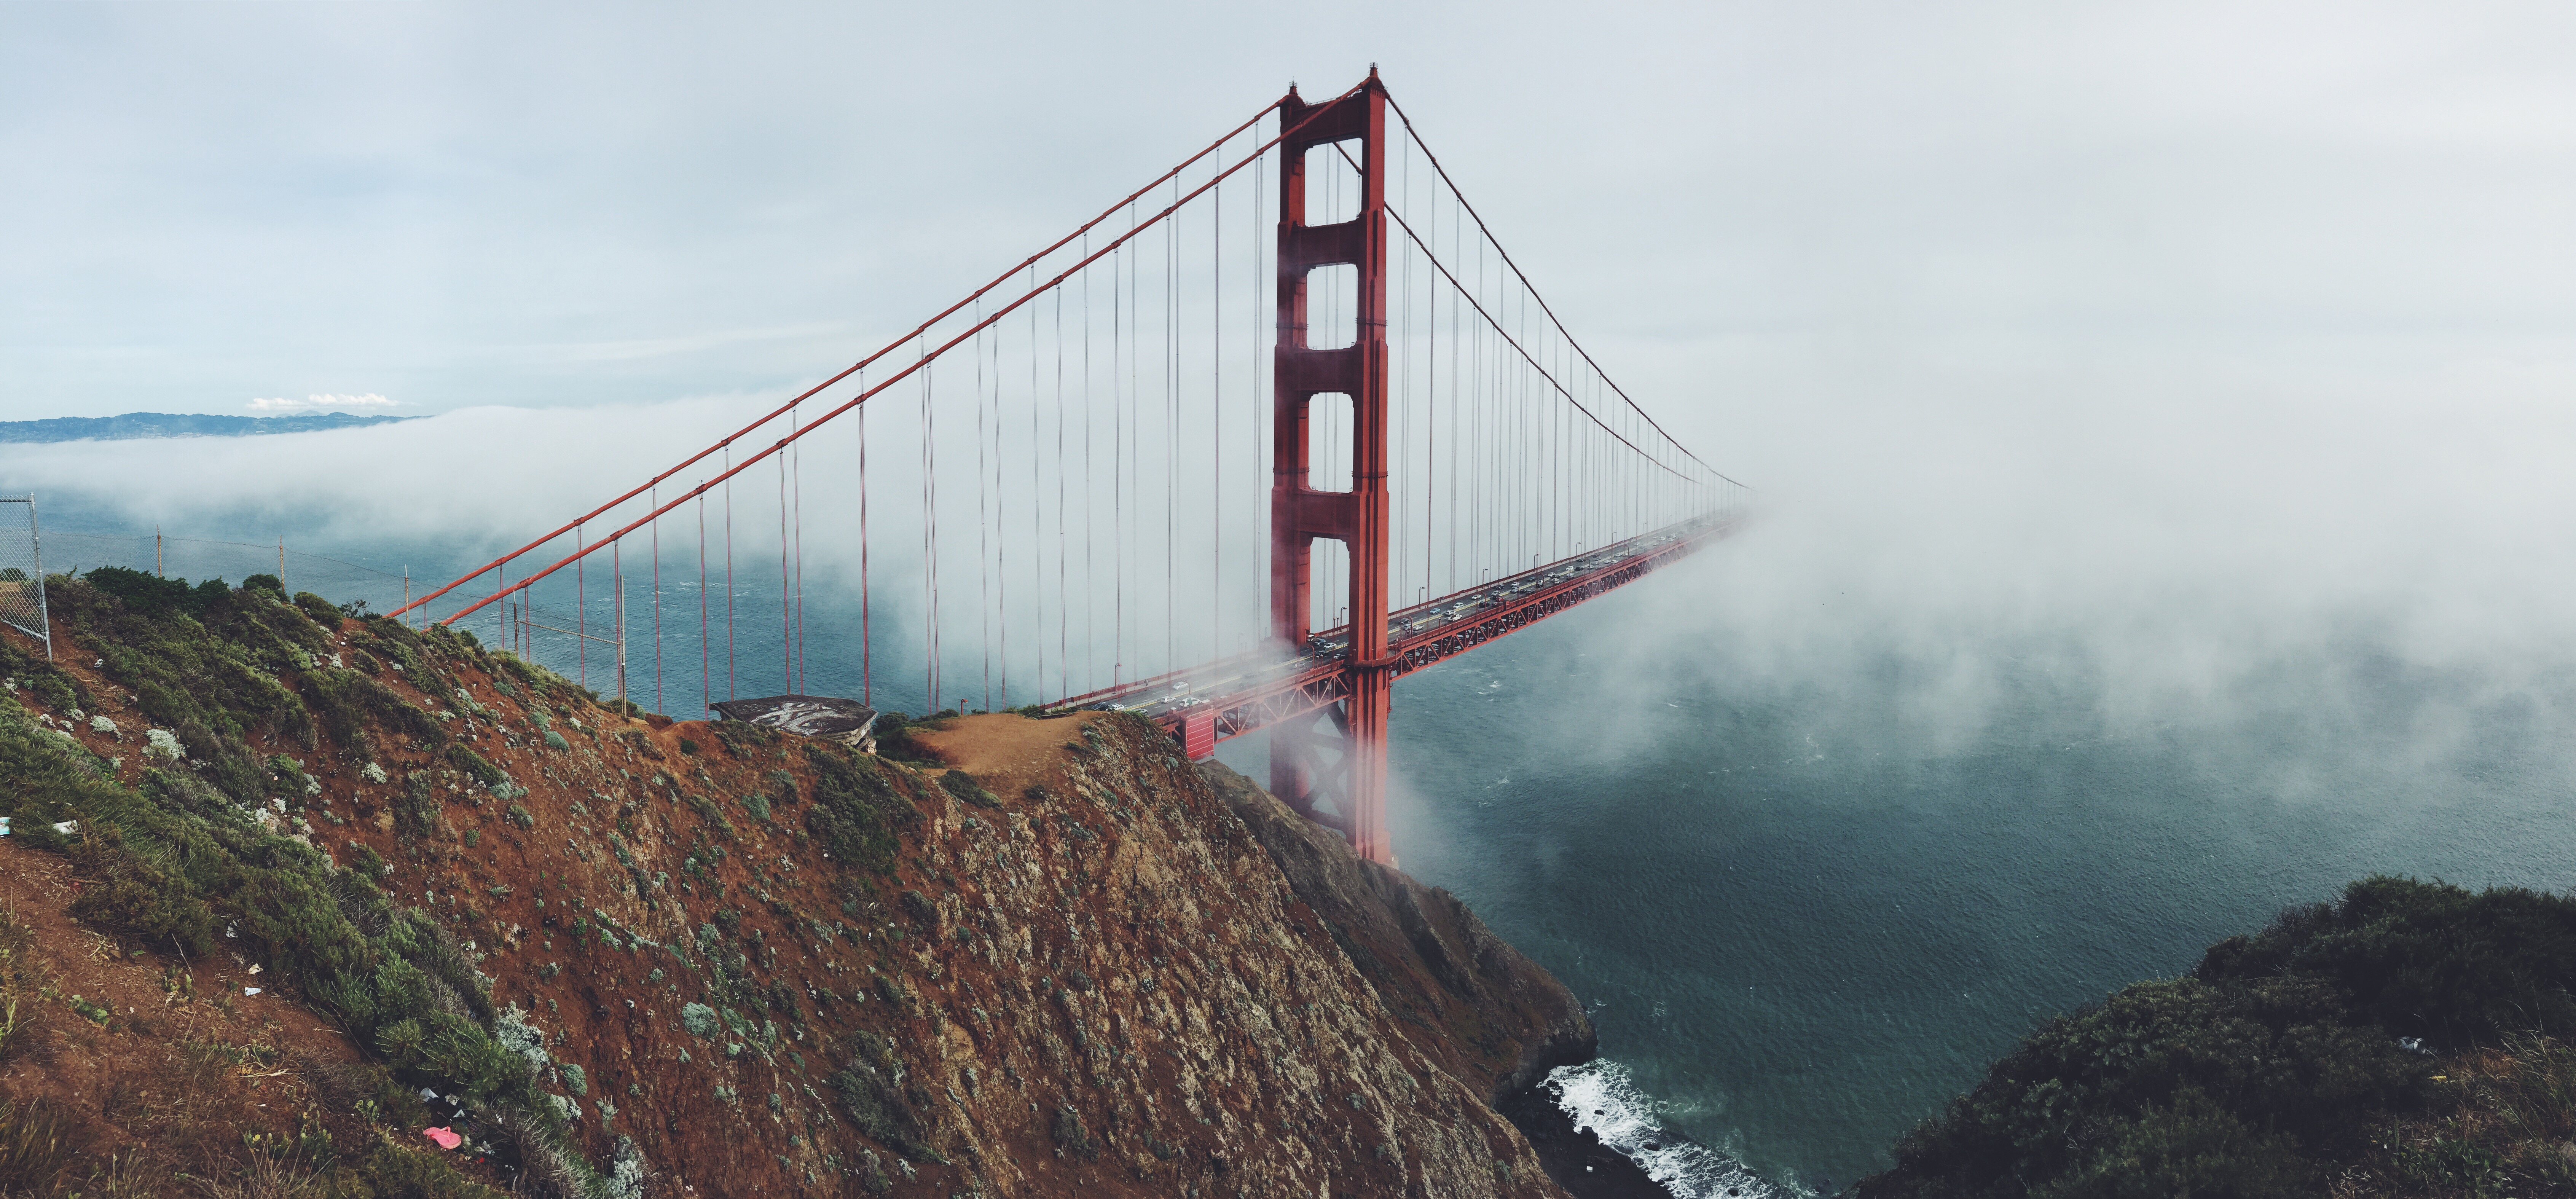 Golden Gate Bridge (Cầu Vàng San Francisco): Không gì tuyệt vời hơn là chiêm ngưỡng vẻ đẹp thần thánh của cầu vàng San Francisco. Với kích thước to lớn và kiến trúc tinh tế, cầu sẽ khiến bạn có cảm giác như đang lạc vào một câu chuyện cổ tích. Hãy lưu giữ bức ảnh này như một kỷ niệm đáng nhớ cho chuyến du lịch của bạn.